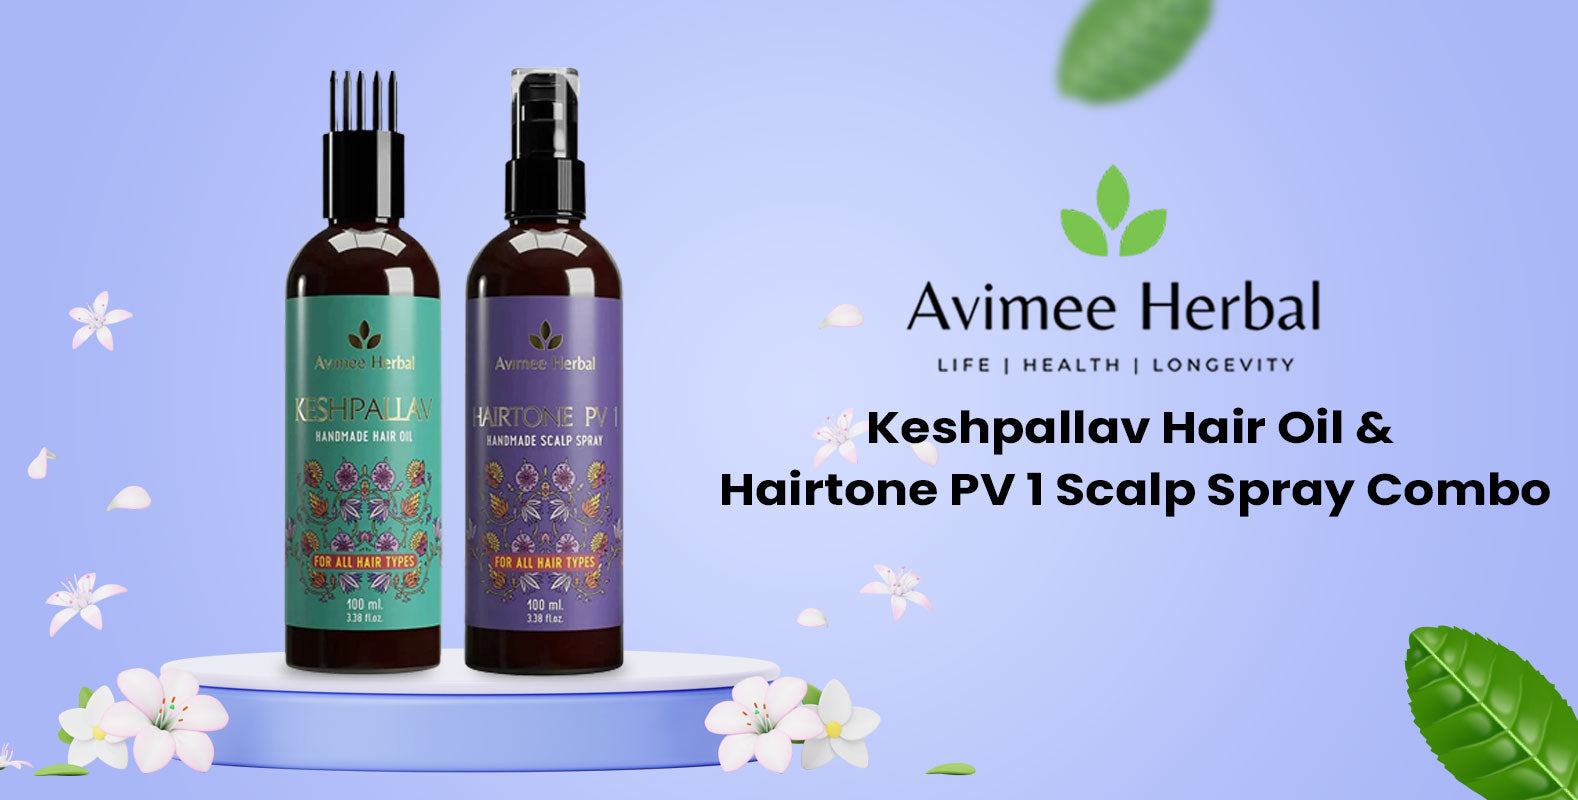 Avimee Herbal Keshpallav Hair Oil & Hairtone PV 1 Scalp Spray Combo